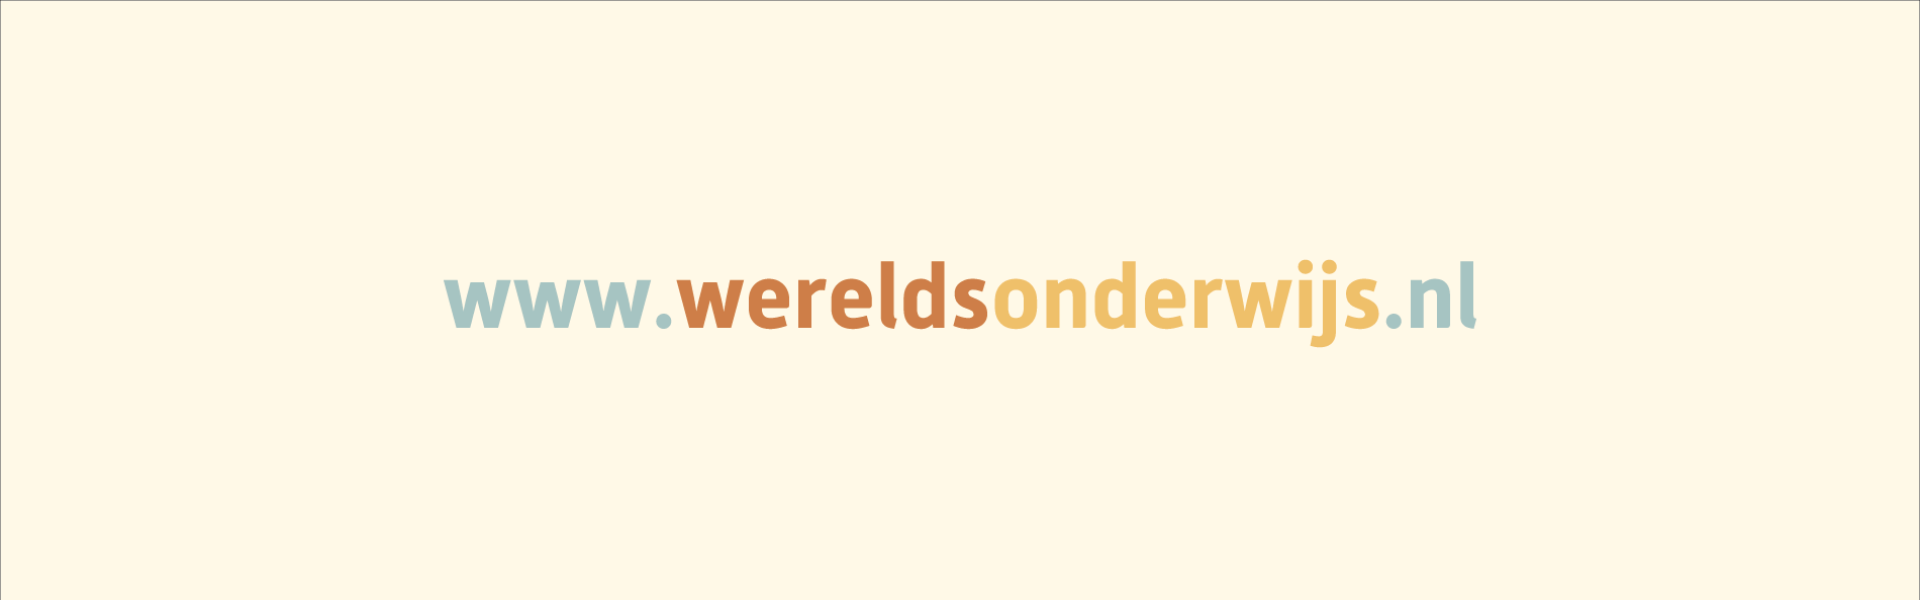 www.wereldsonderwijs.nl